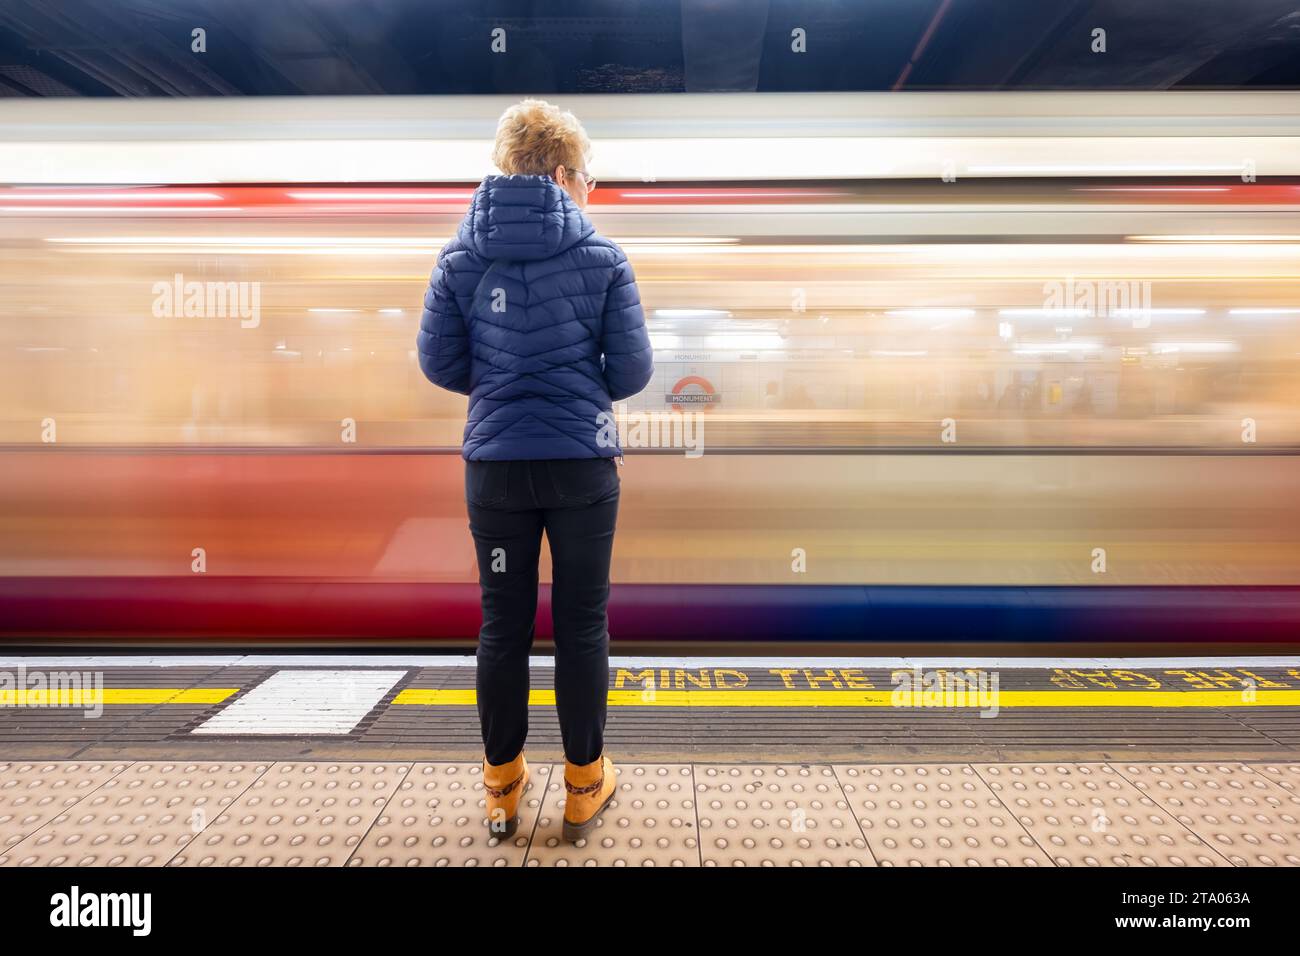 Un viajero de pie en la plataforma de la estación de metro Monument en el metro de Londres mientras un tren de metro pasa a través de la estación Foto de stock